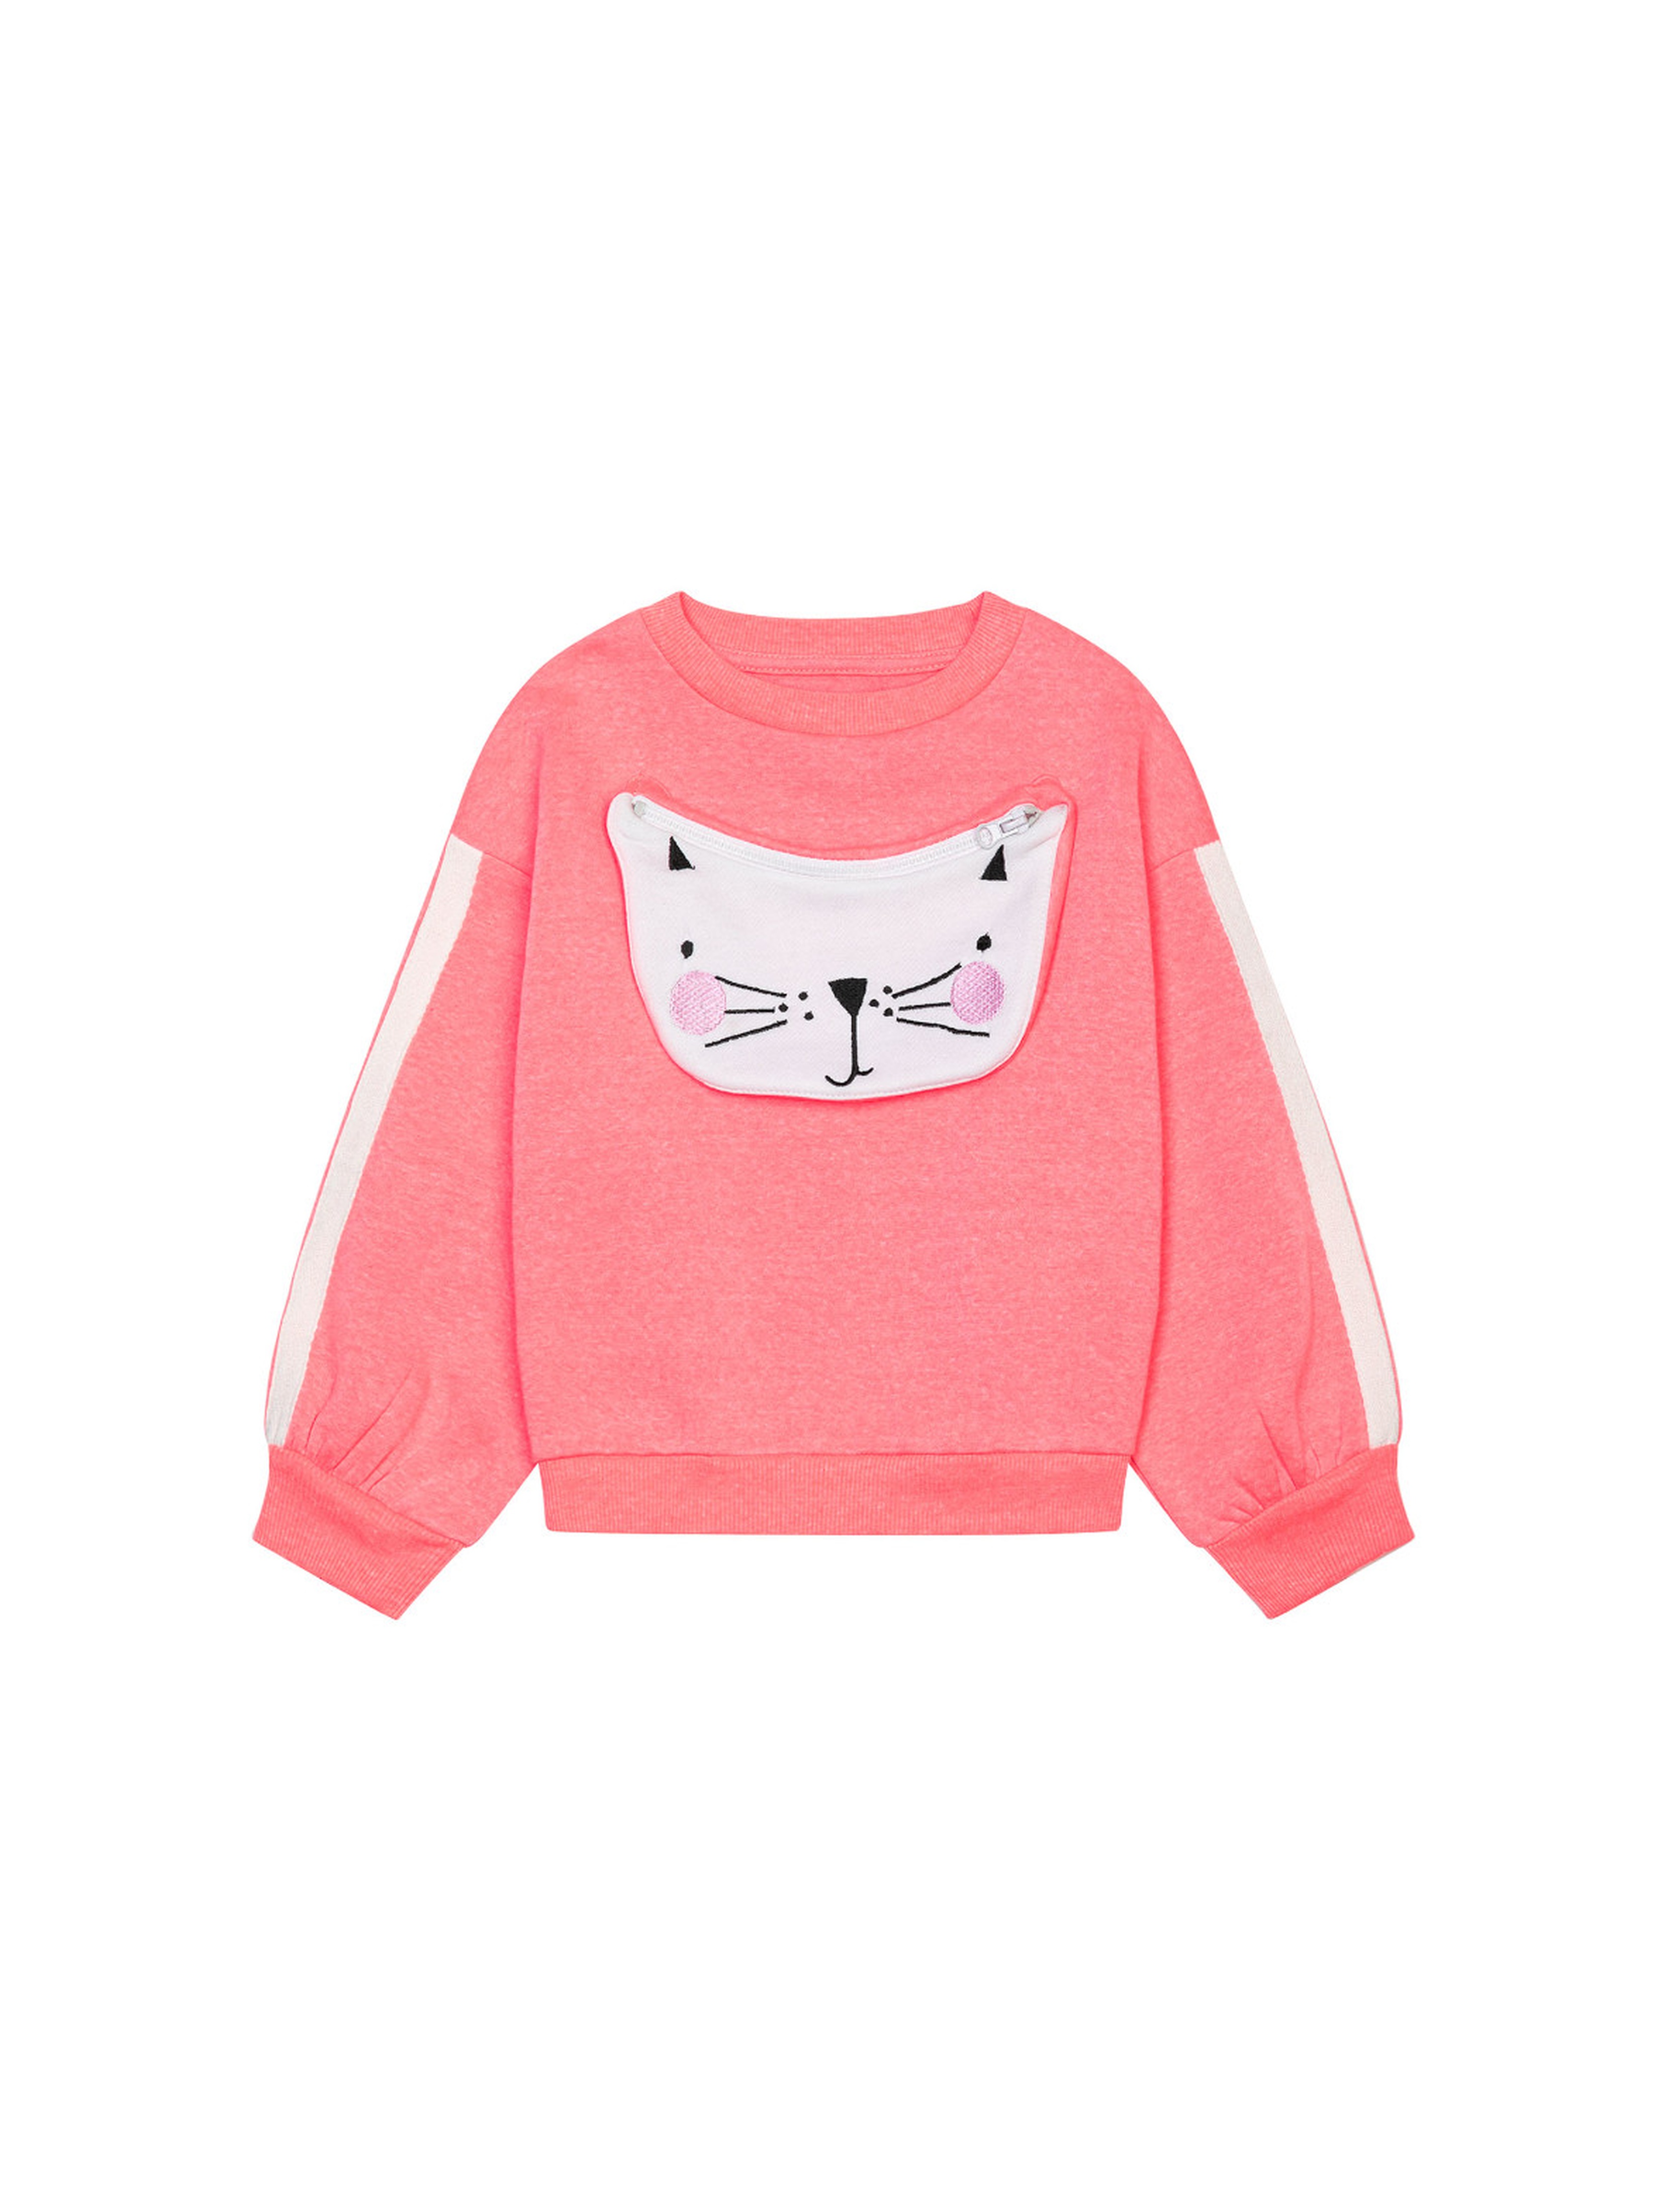 Różowa bluza dziewczęca z kotkiem